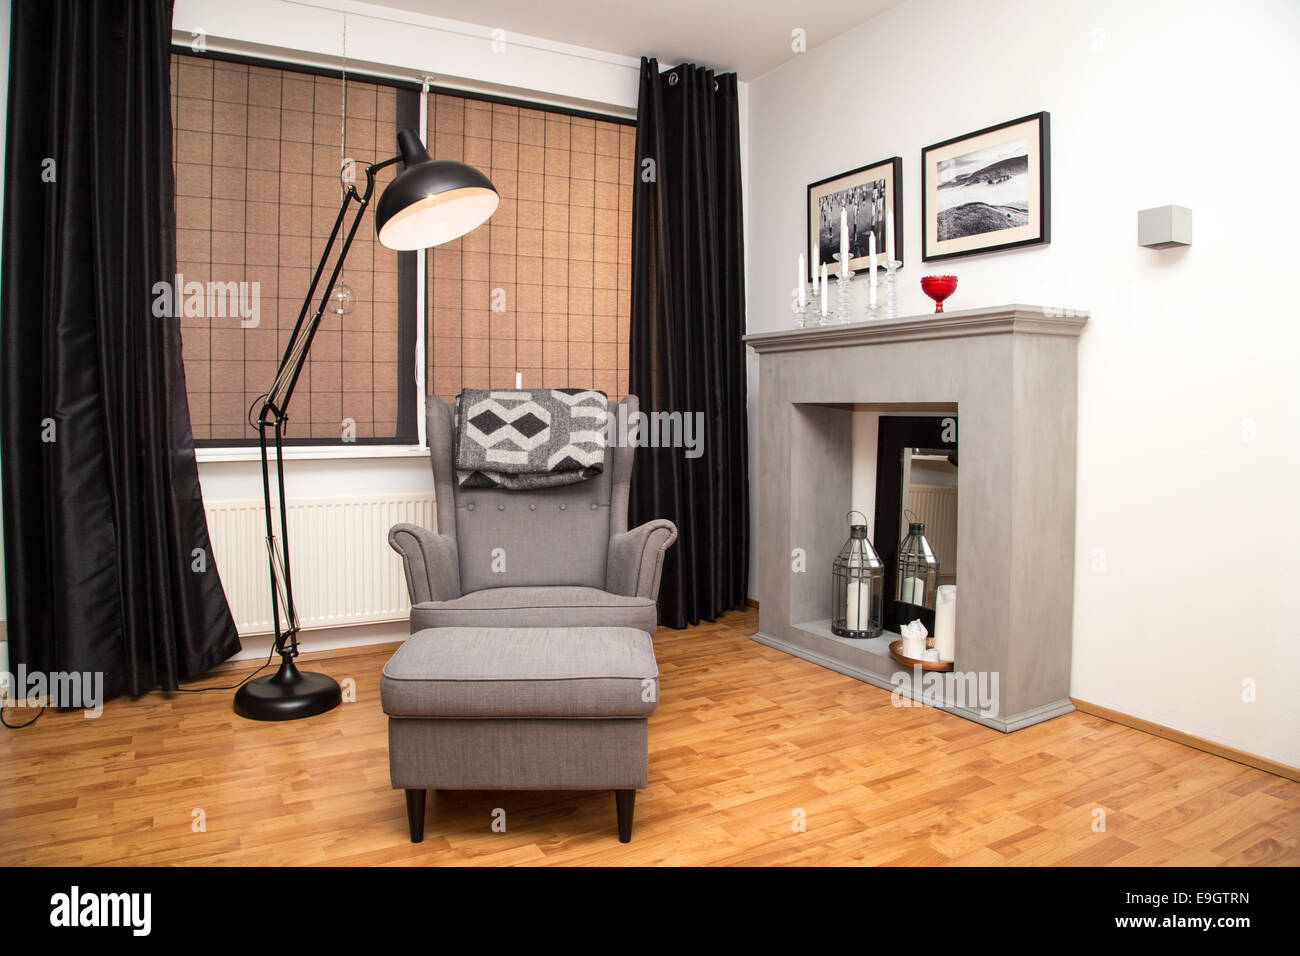 Salon moderne dans un vrai foyer résidentiel Banque D'Images